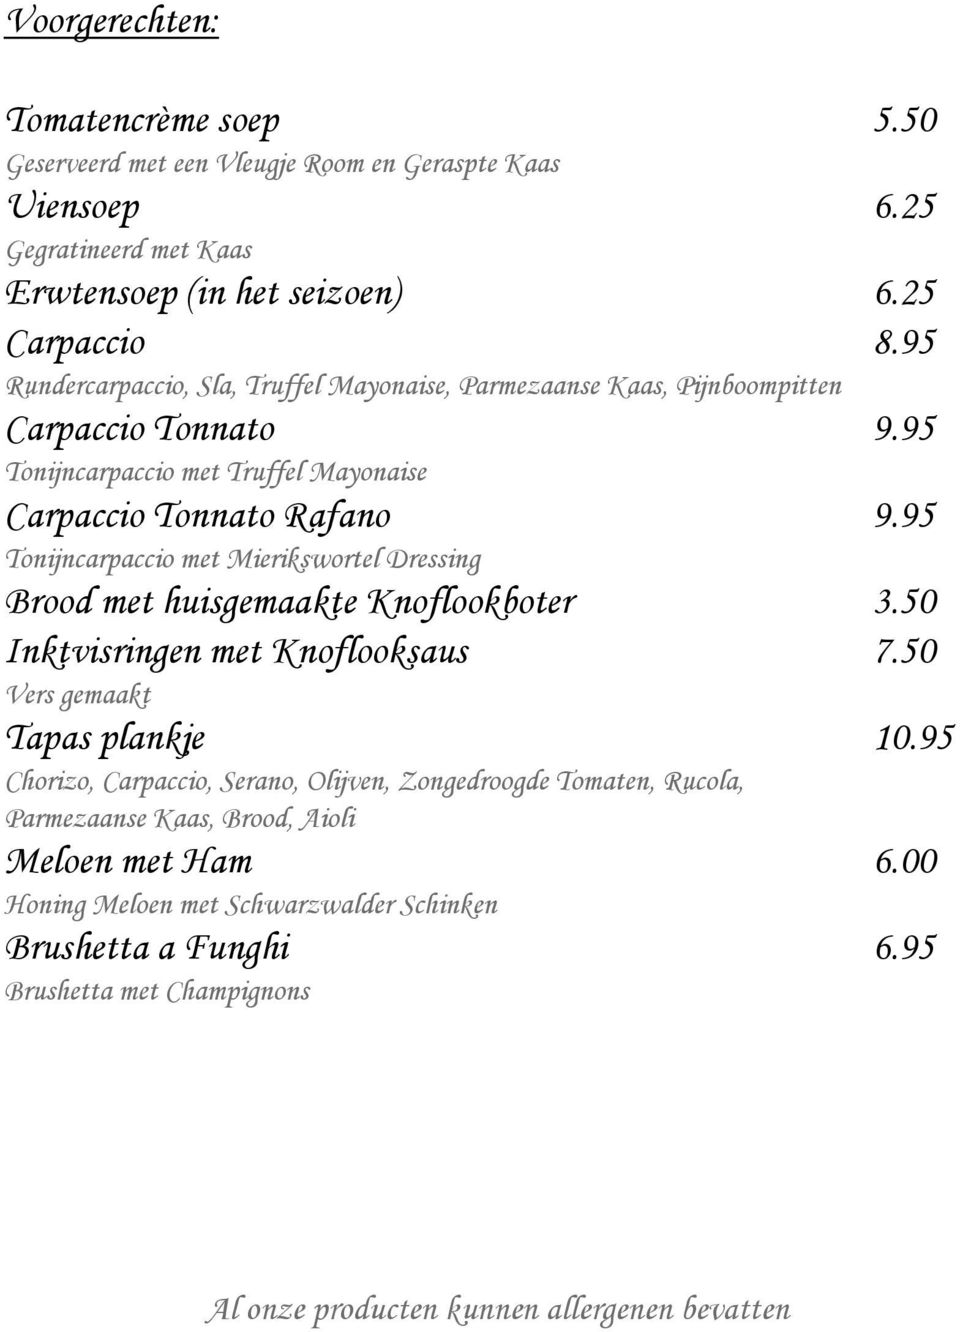 95 Tonijncarpaccio met Mierikswortel Dressing Brood met huisgemaakte Knoflookboter 3.50 Inktvisringen met Knoflooksaus 7.50 Vers gemaakt Tapas plankje 10.